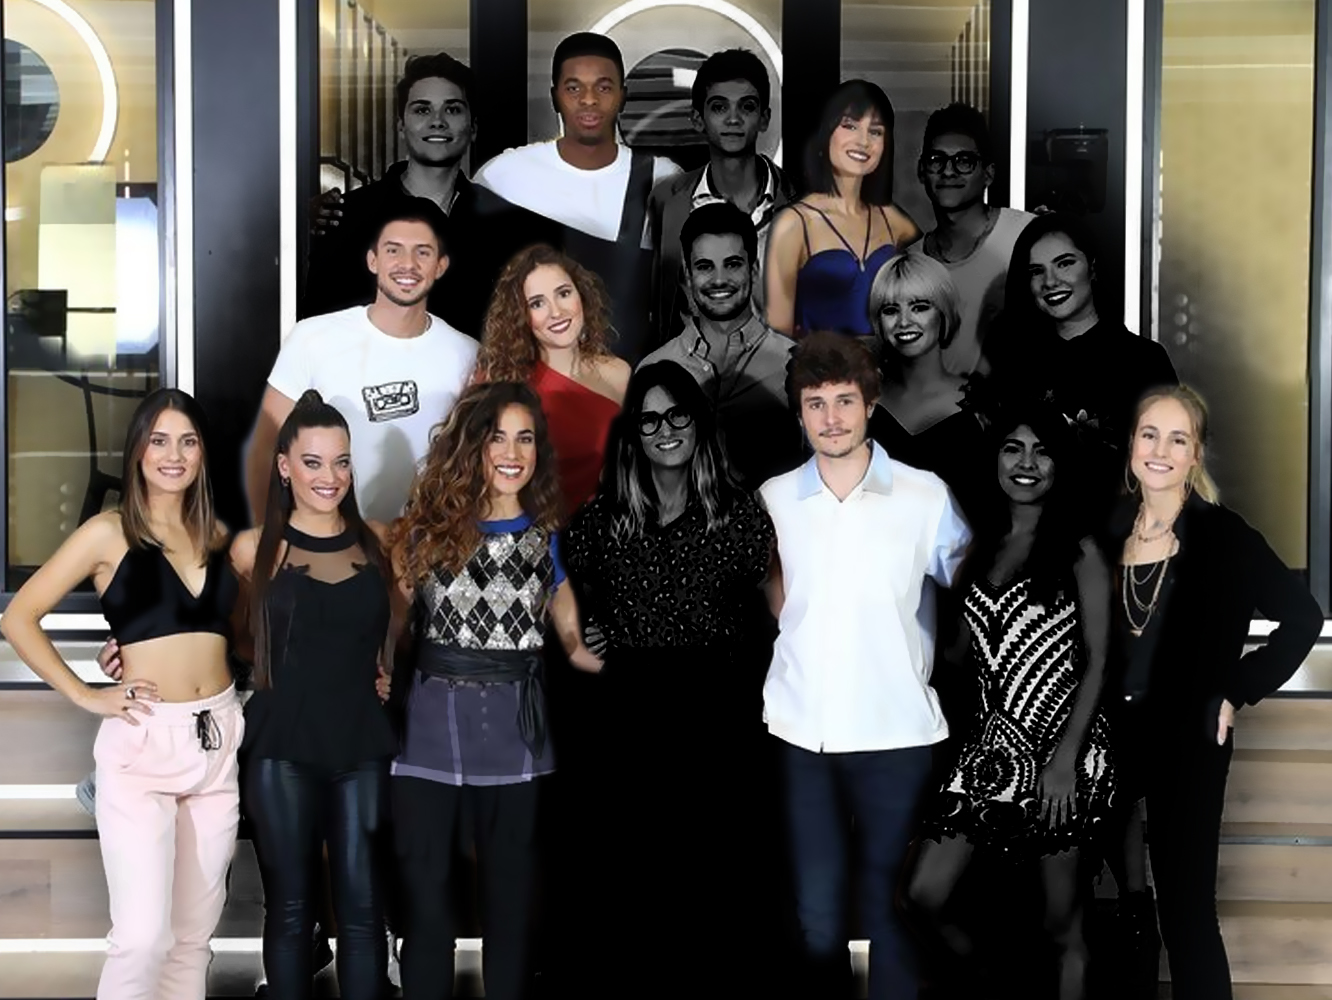  Televisión Española deja a Alba Reche fuera de la competición eurovisiva y anuncia las 10 finalistas